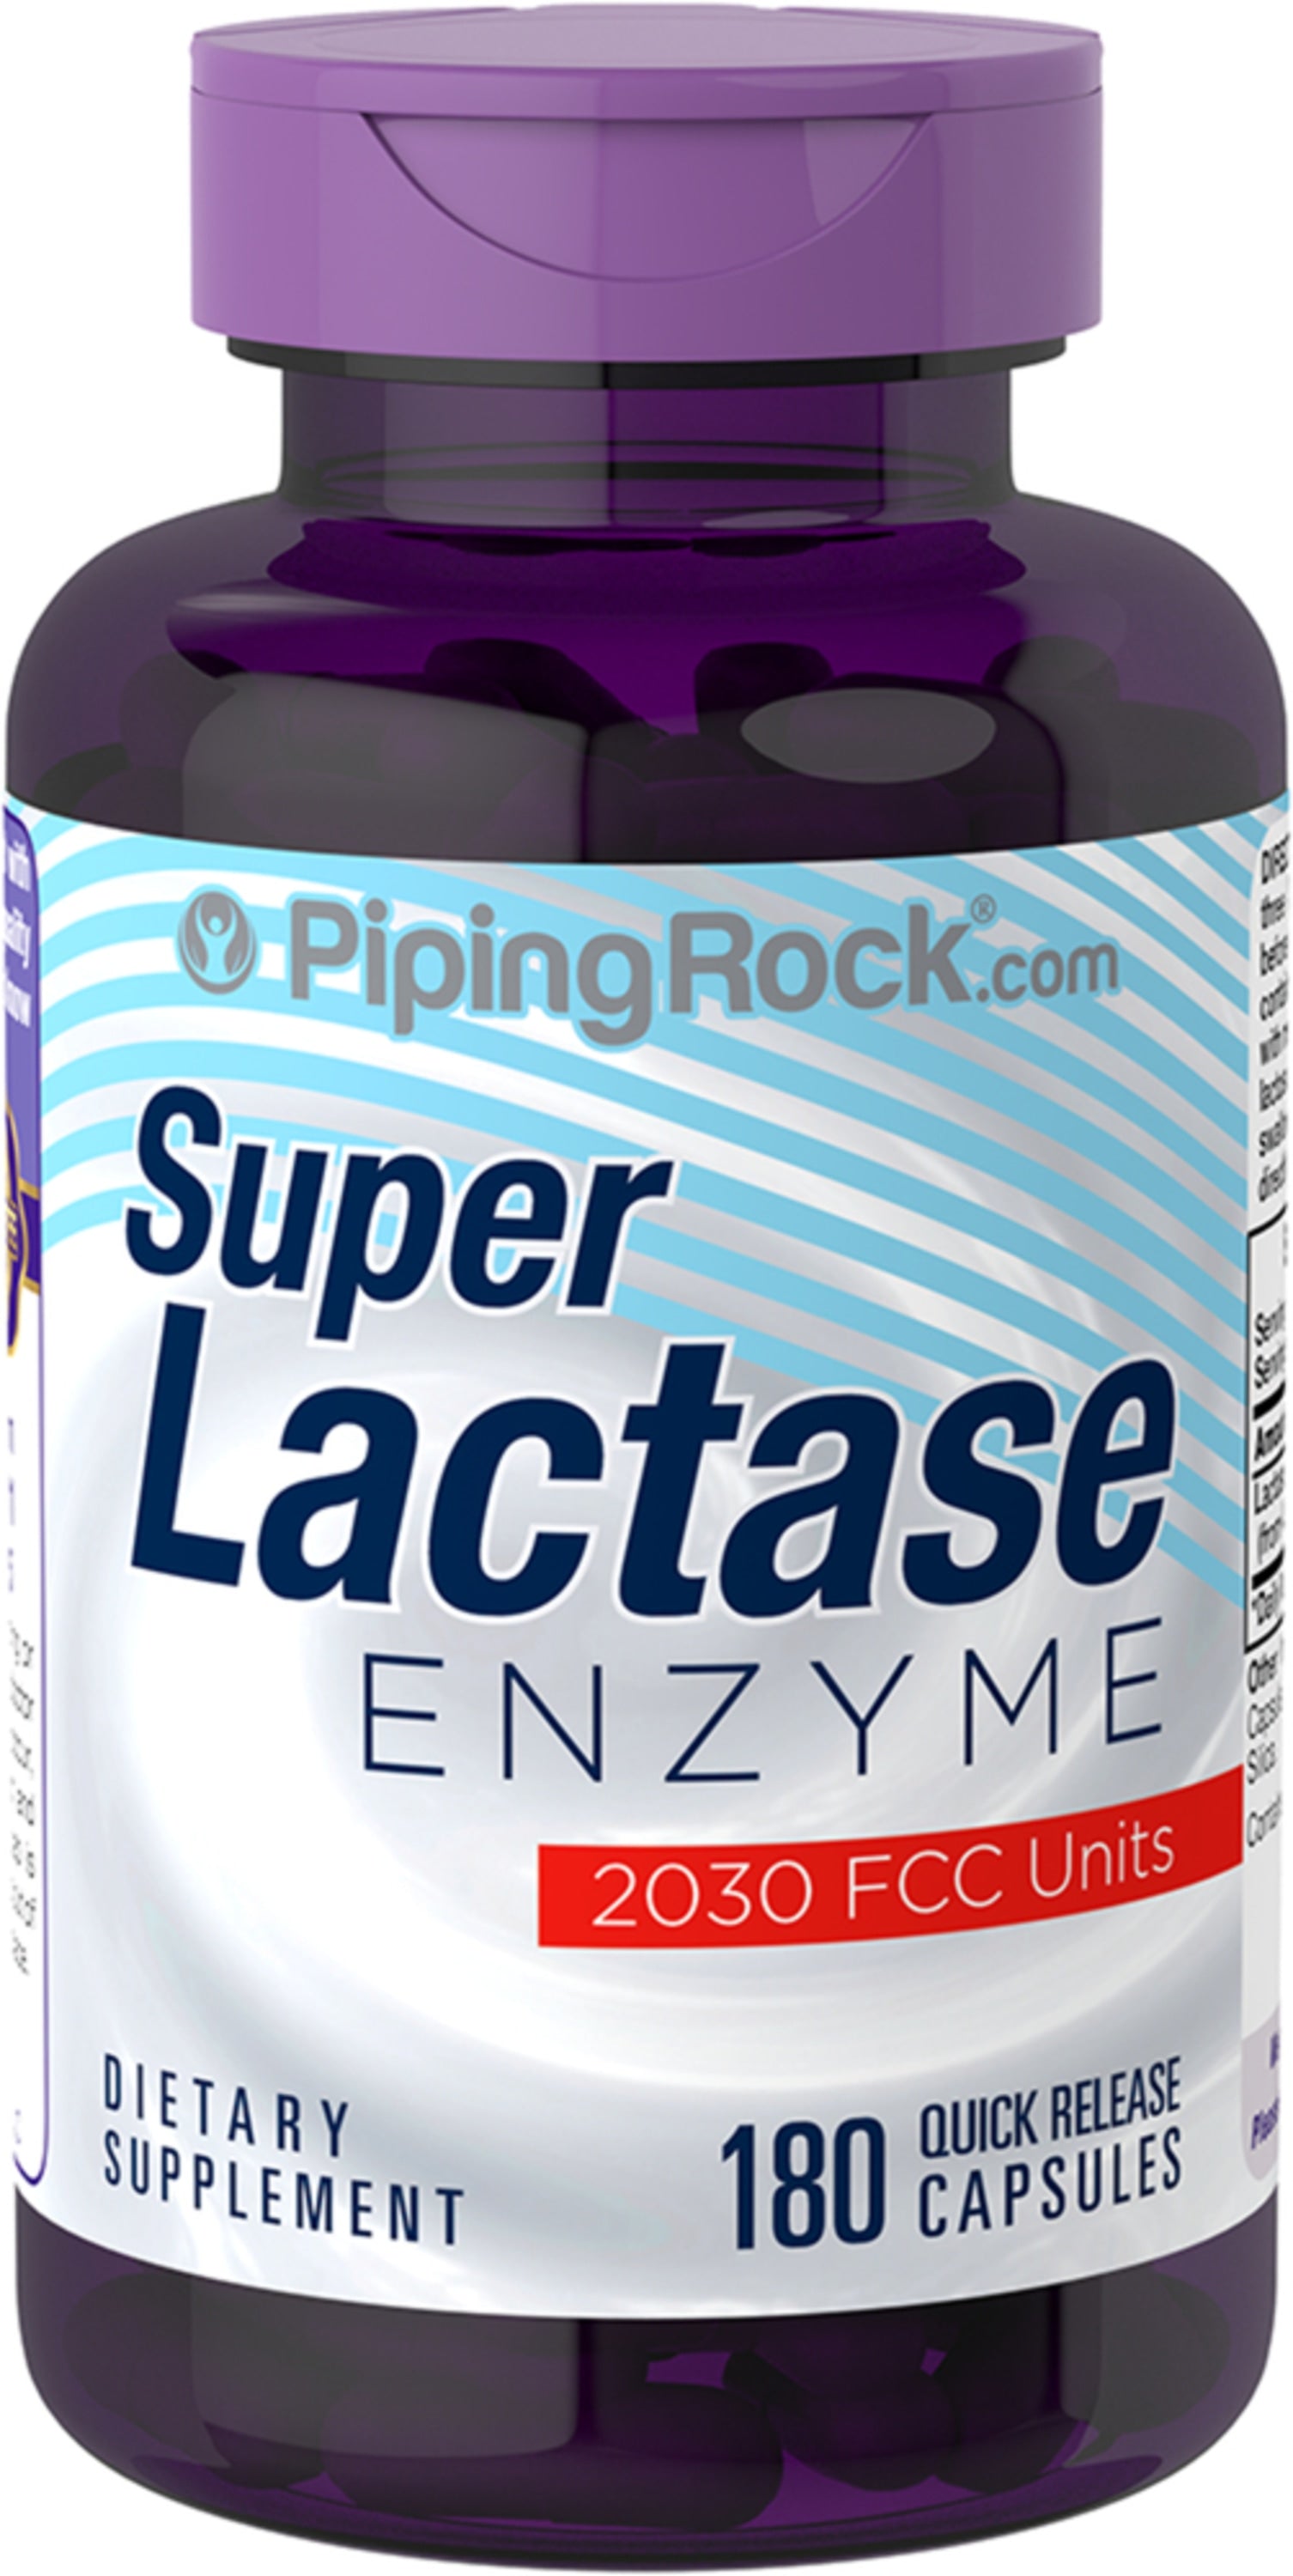 Super Lactase Enzyme 2030 Fcc Units 180 Quick Release Capsule